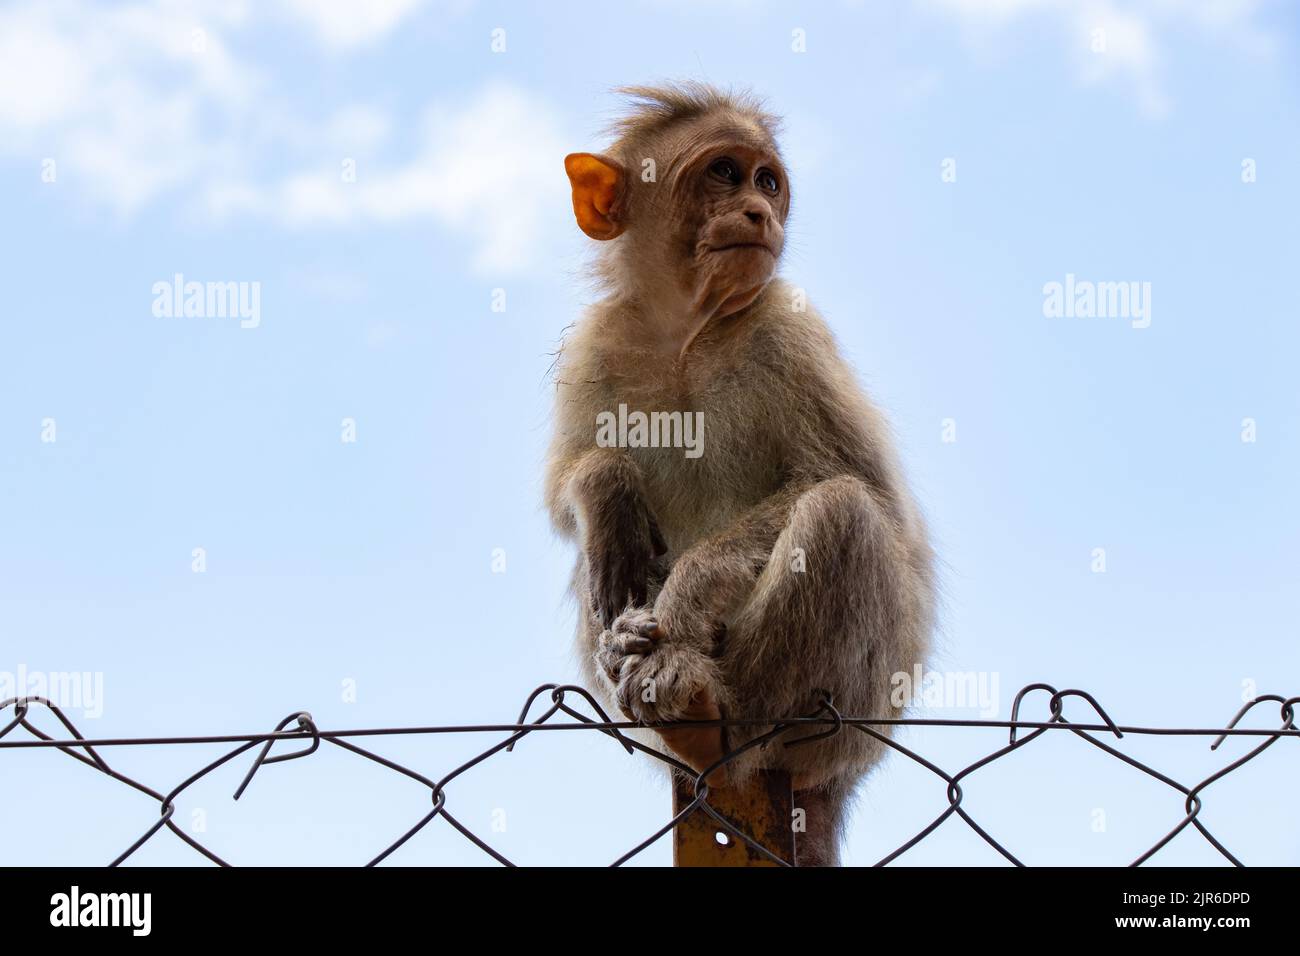 Ein Bonnet-Makak, eine Art von Makaken, die in Südindien auf dem Hintergrund eines Drahtzauens mit blauem Himmel gefunden wurde Stockfoto